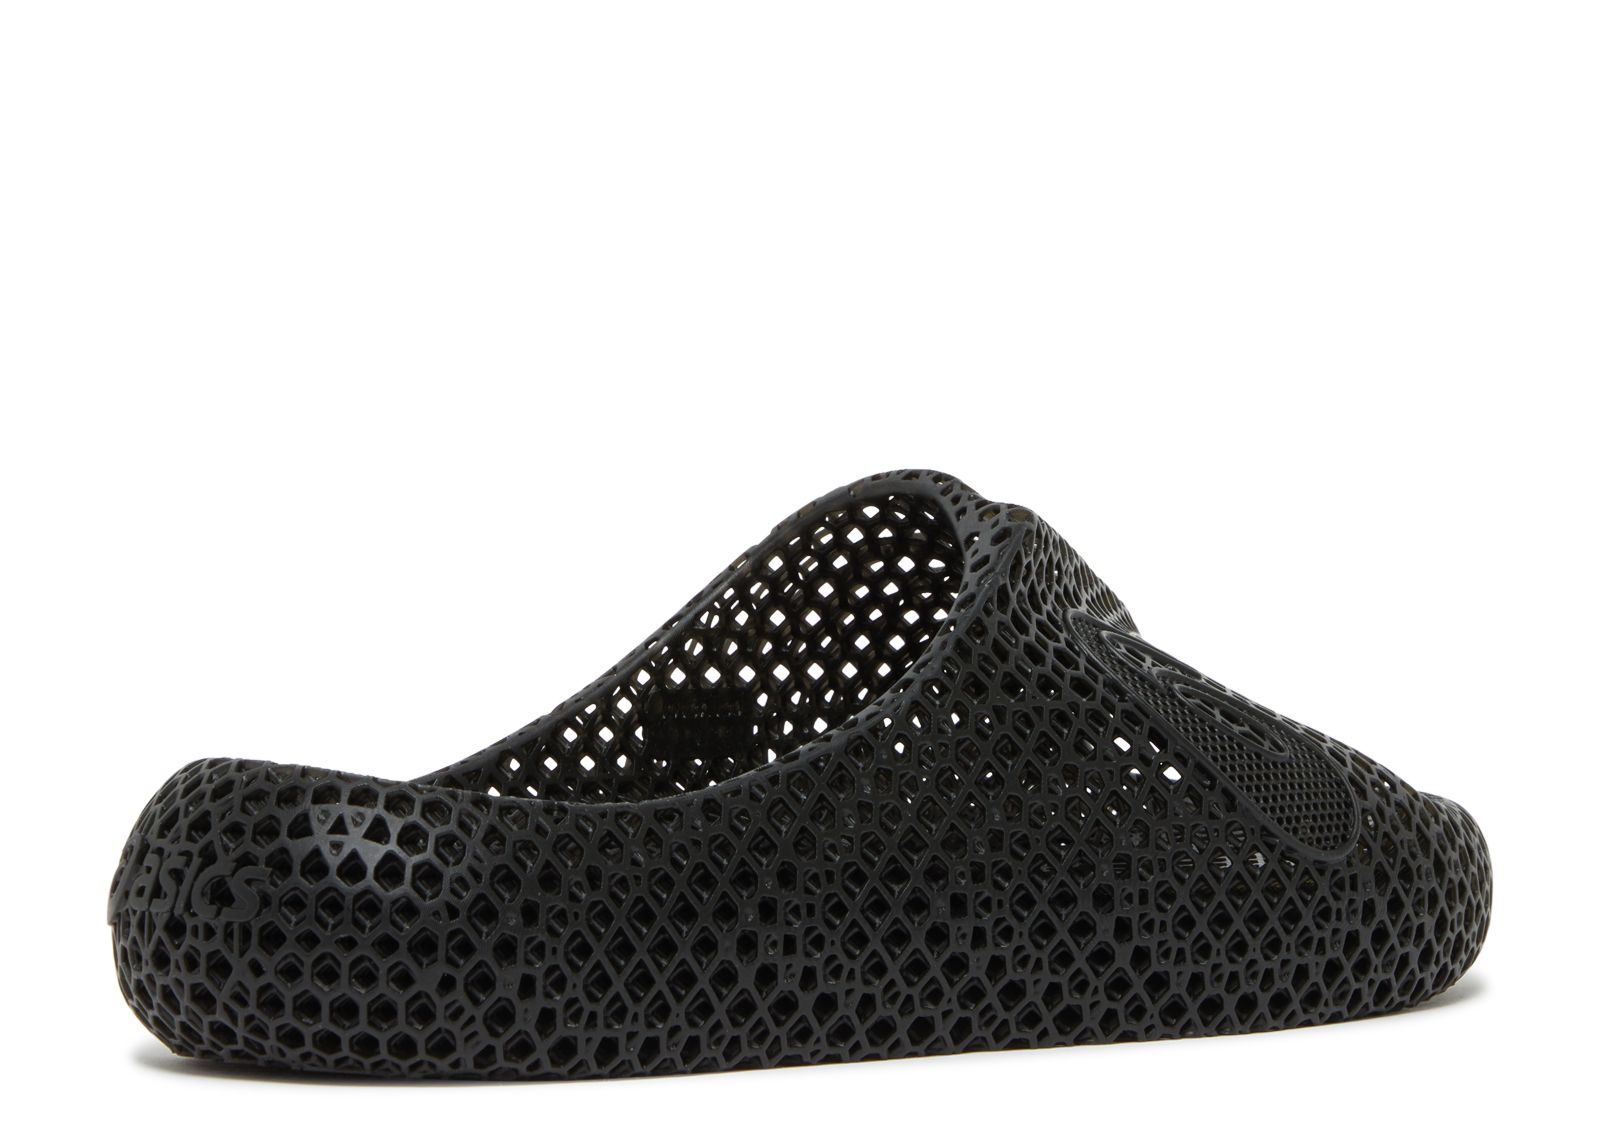 ACTIBREEZE 3D Sandal 'Black' 2023 - ASICS - 1013A130 001 - black 